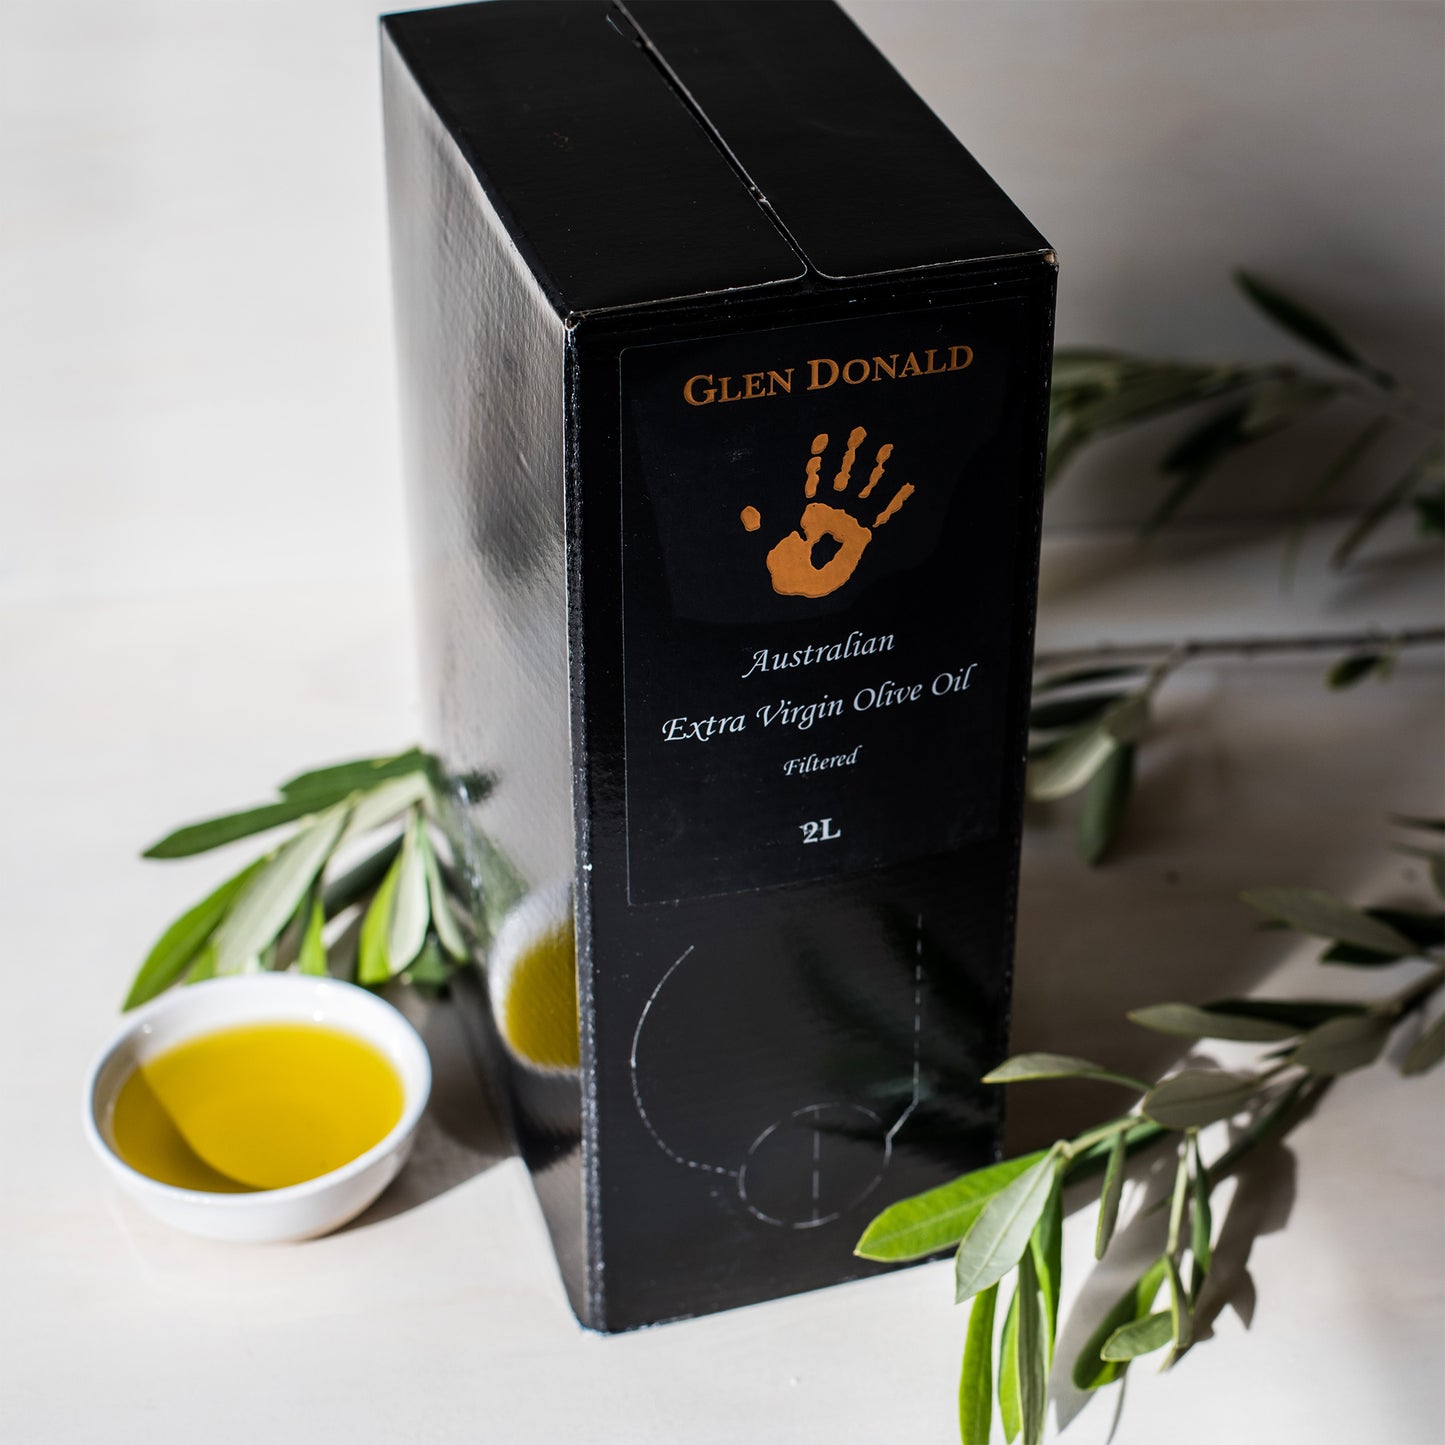 Australian olive oil casks - Glen Donald Estate